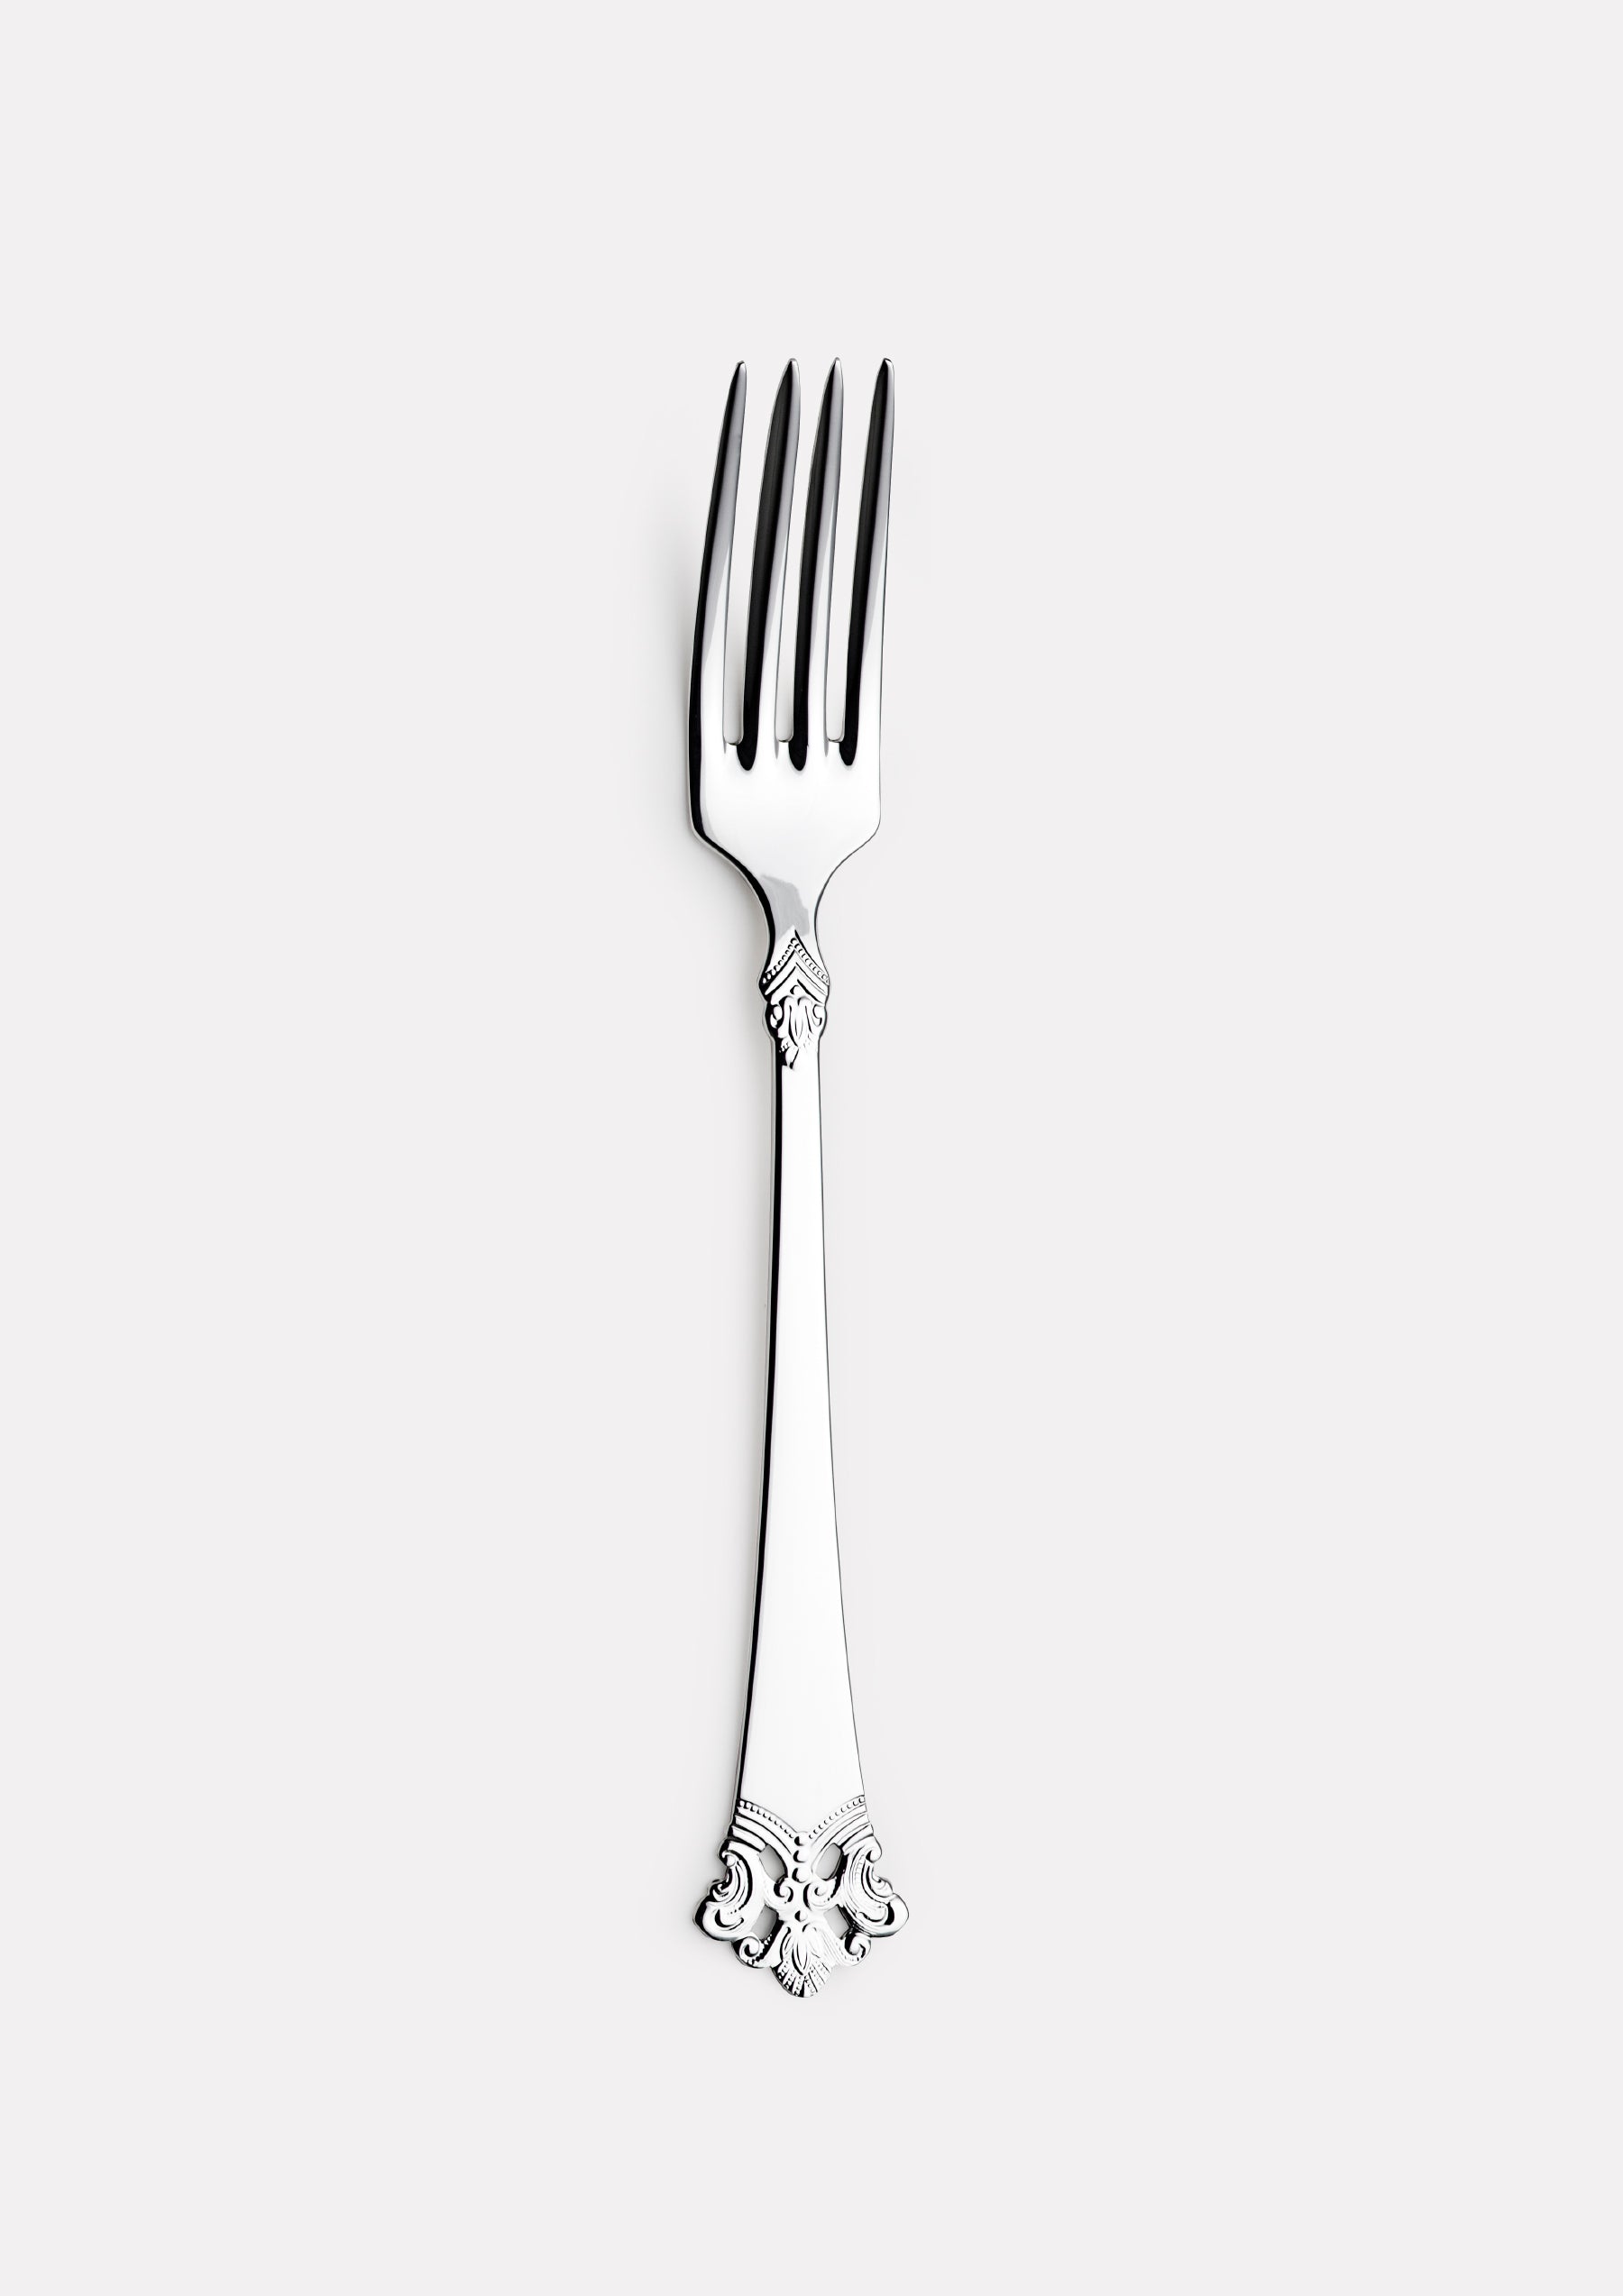 Anitra small dining fork